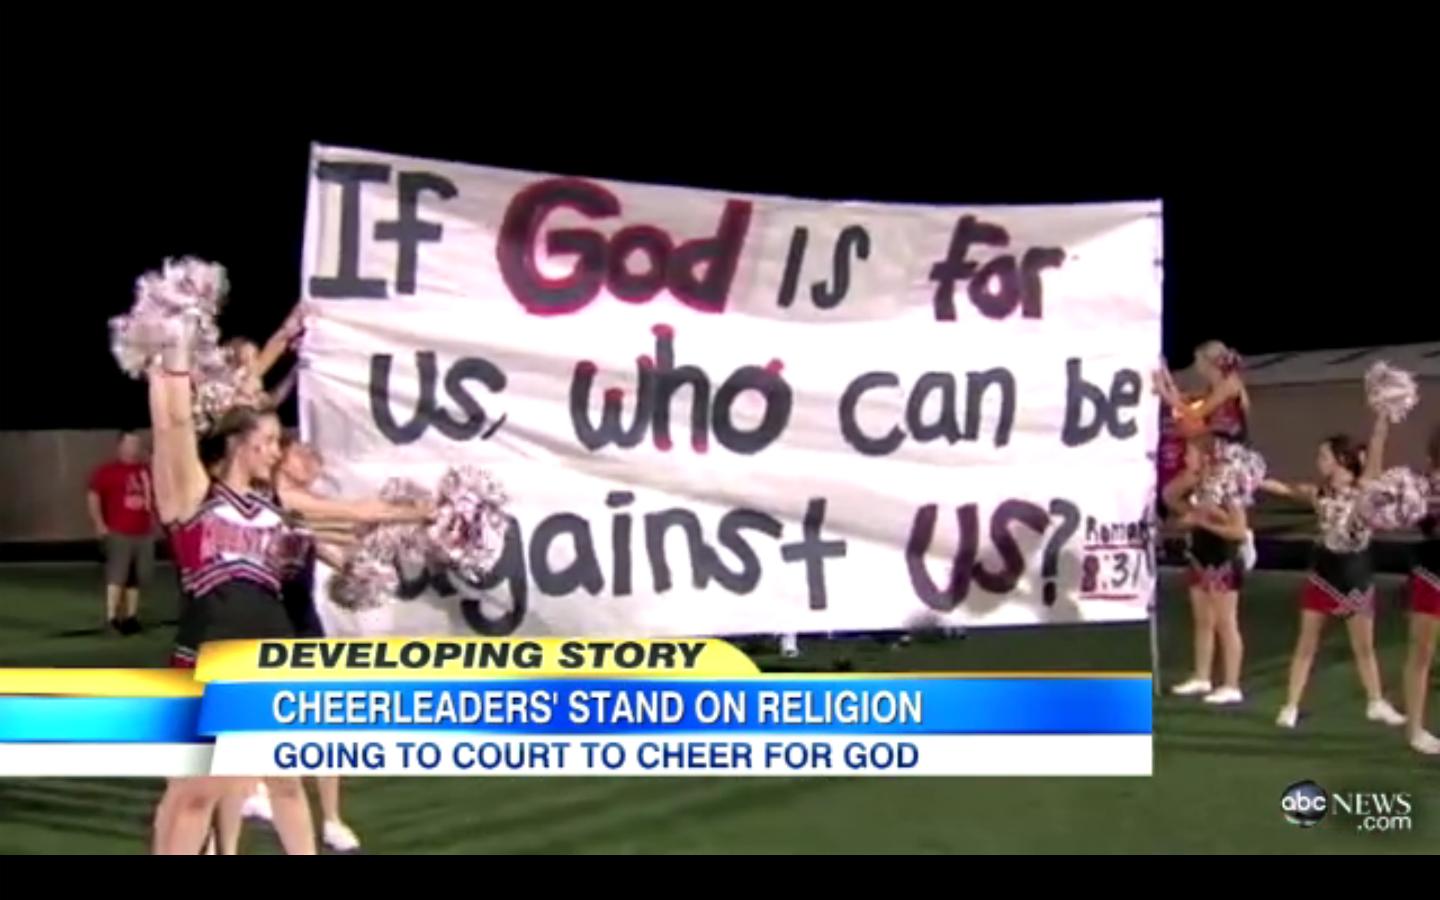 Judge Temporarily Rules in Favor of Bible-Promoting Cheerleaders in Kountze, Texas